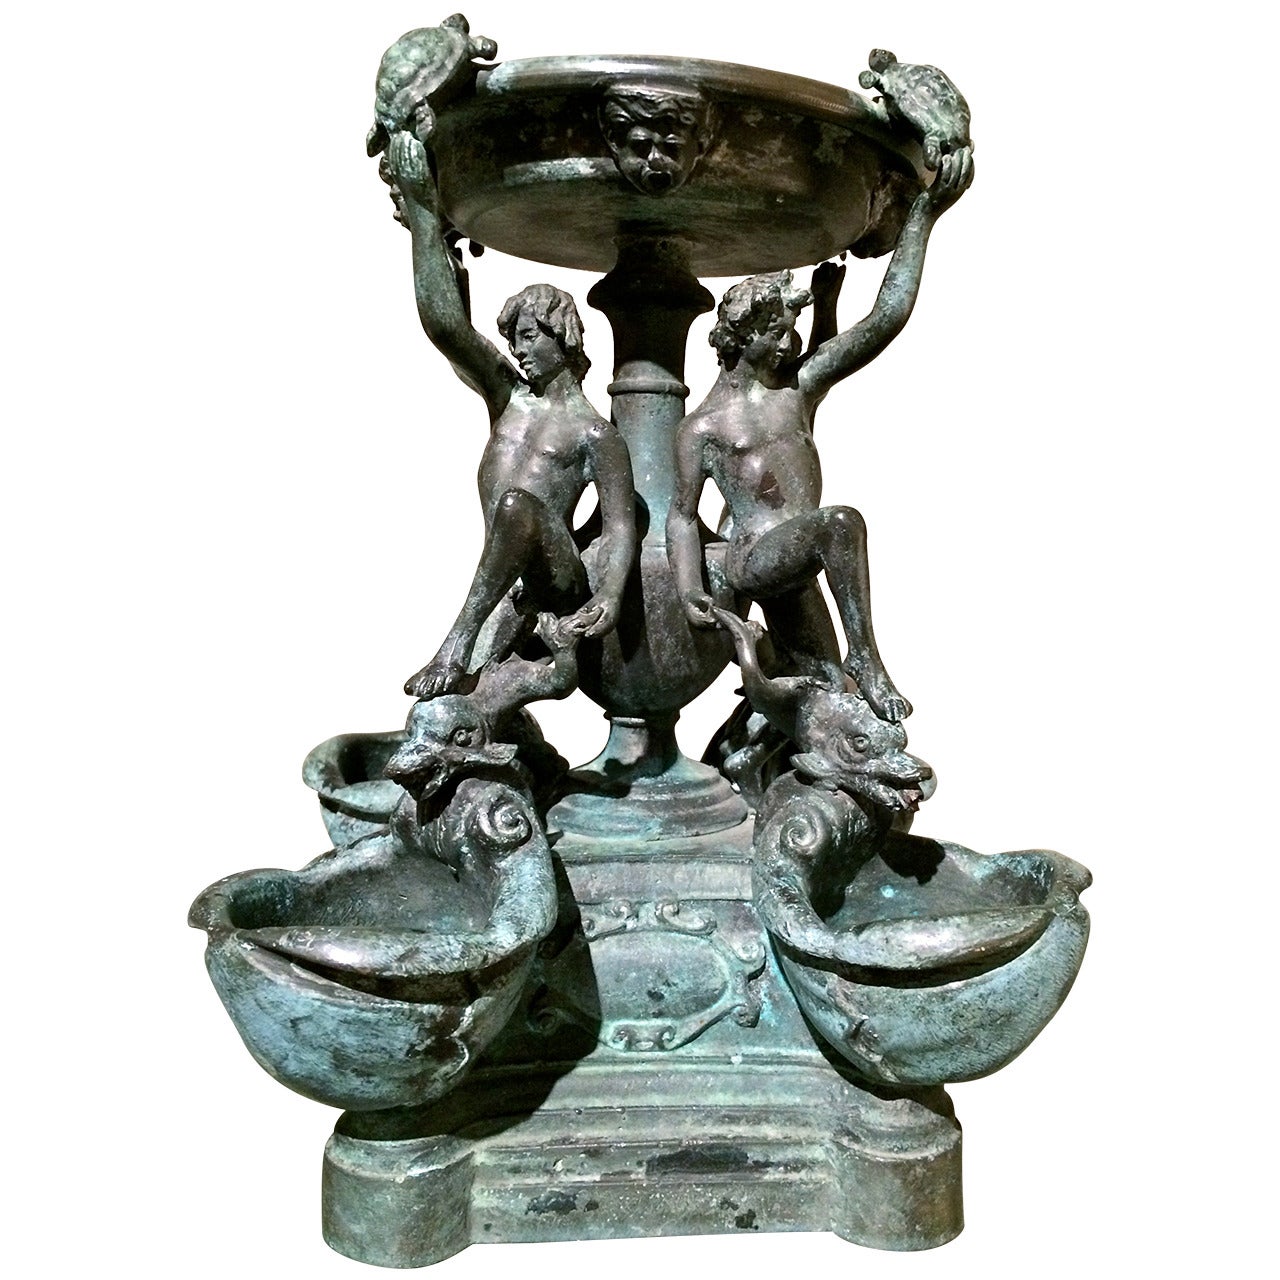 Grand Tour Bronze of 'La Fontana Delle Tartarughe' (the Turtle Fountain)